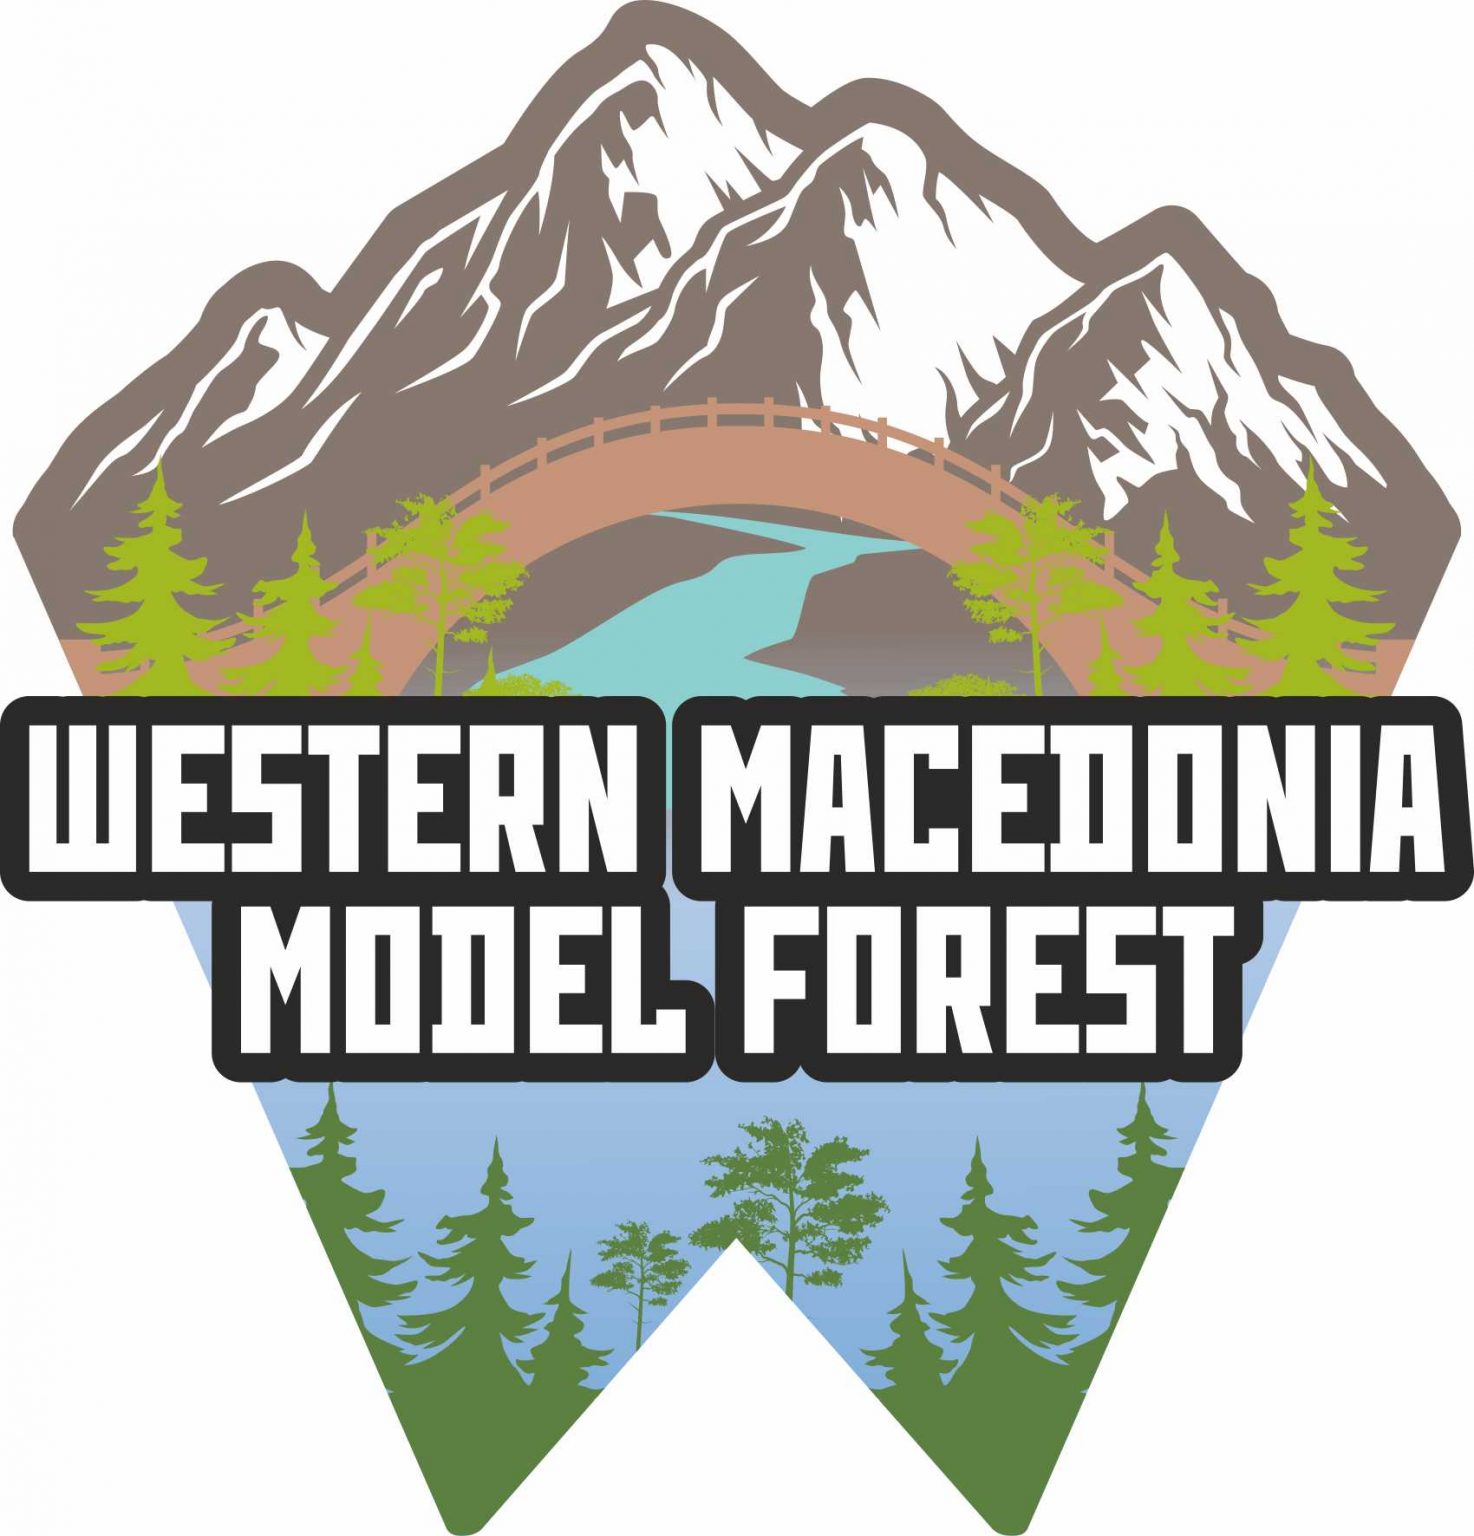 Το Υποψήφιο ‘’Πρότυπο Δάσος Δυτικής Μακεδονίας’’ σας προσκαλεί σε μία σειρά περιβαλλοντικών δράσεων που θα πραγματοποιηθούν το Σάββατο 17 και Κυριακή 18 Σεπτεμβρίου